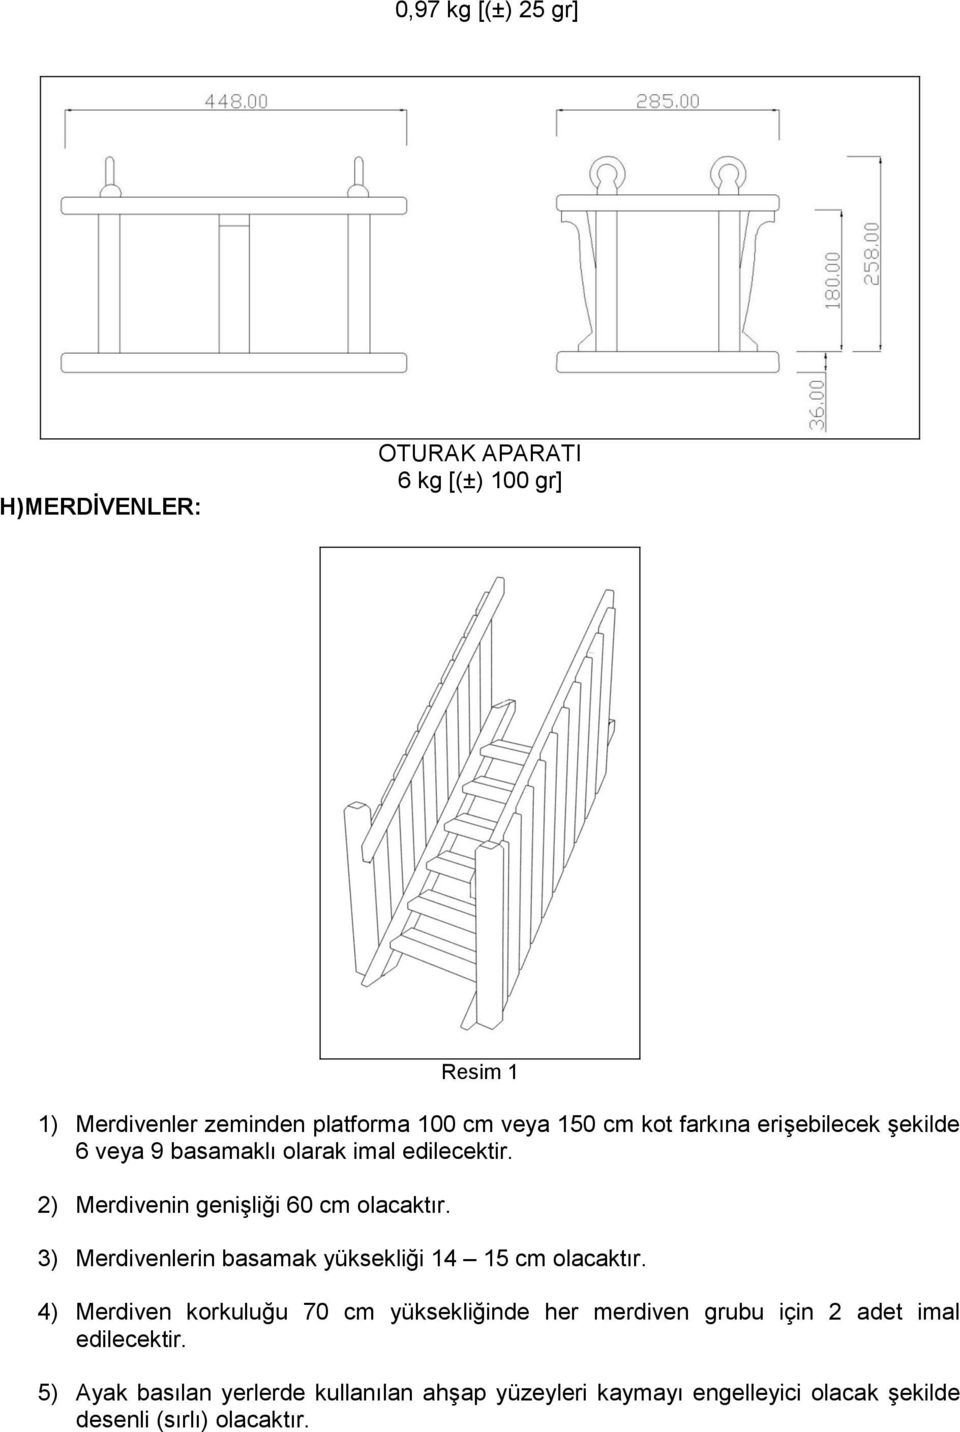 3) Merdivenlerin basamak yüksekliği 14 15 cm olacaktır.